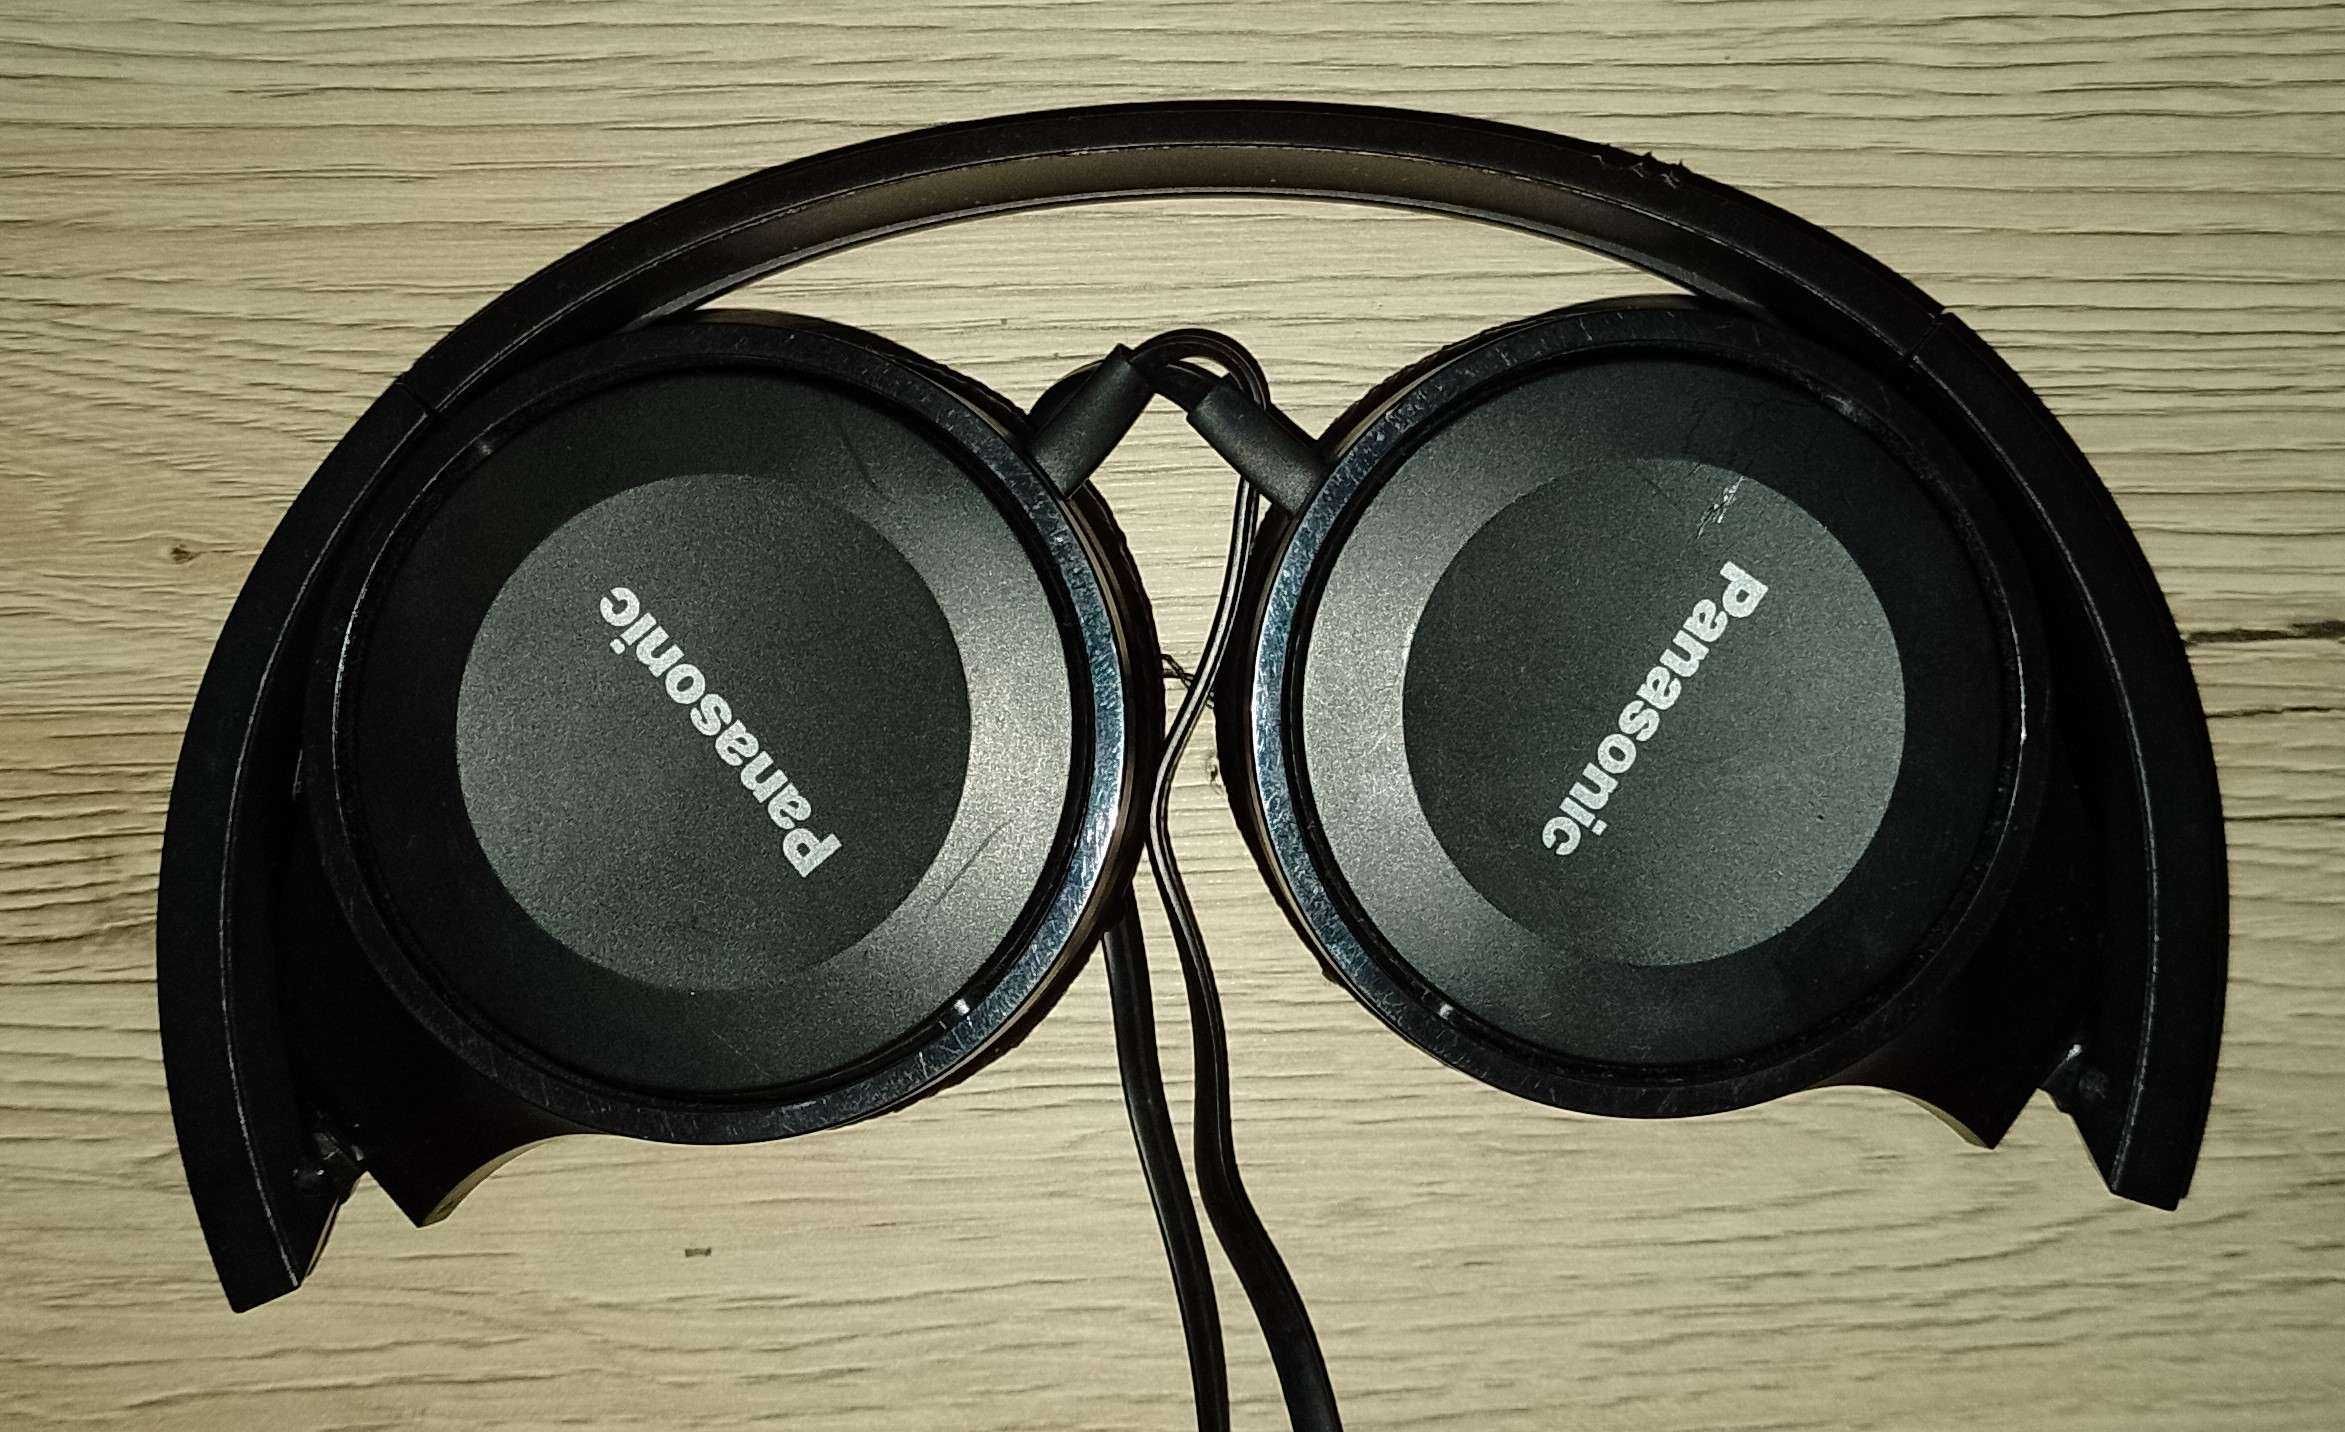 Słuchawki nauszne PANASONIC RP-HF100E-K Czarny